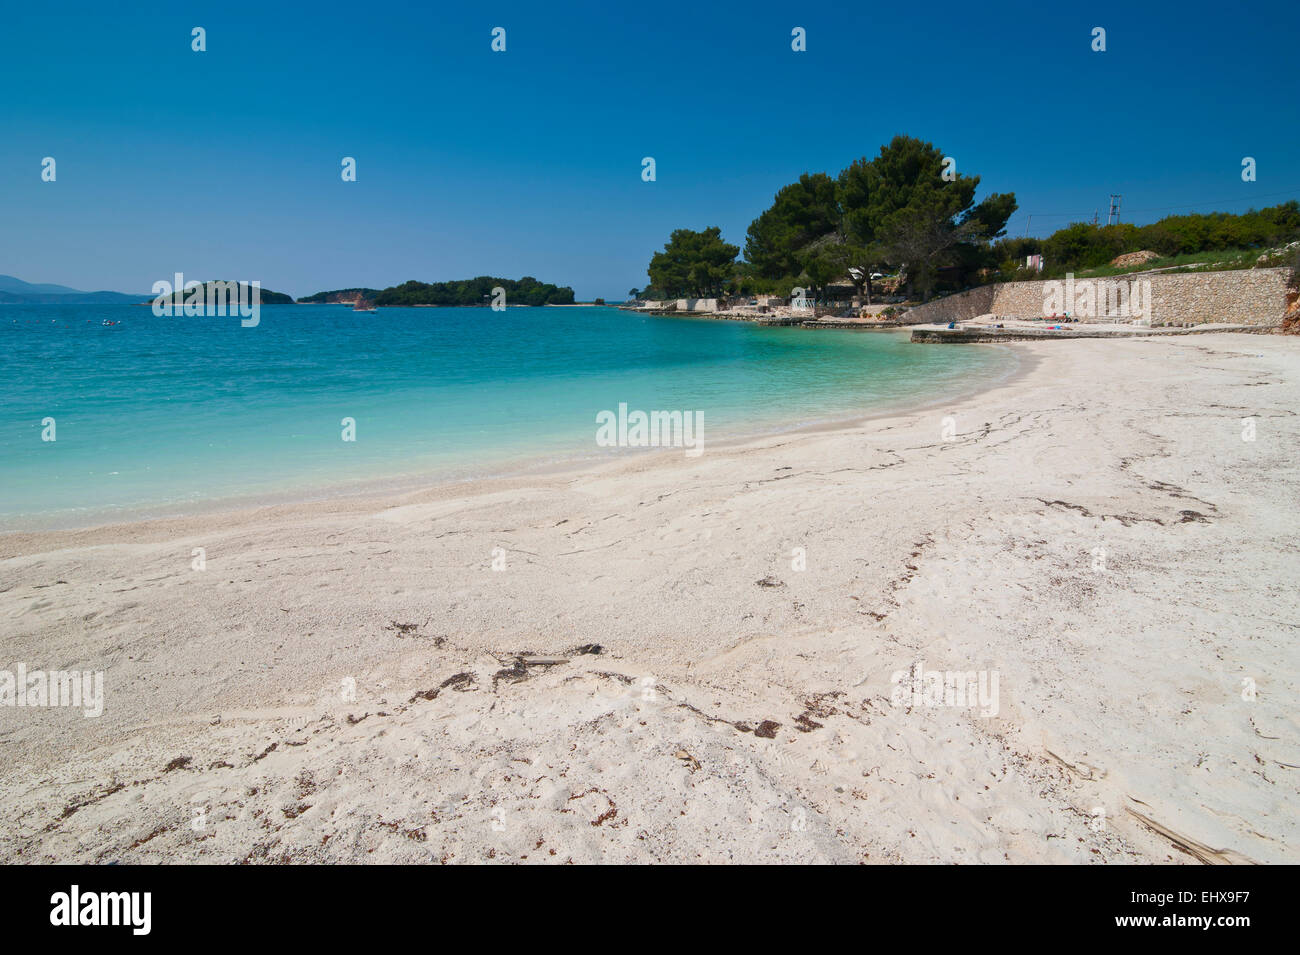 Plage de sable blanc et eau turquoise à Ksamil, Albanie Banque D'Images